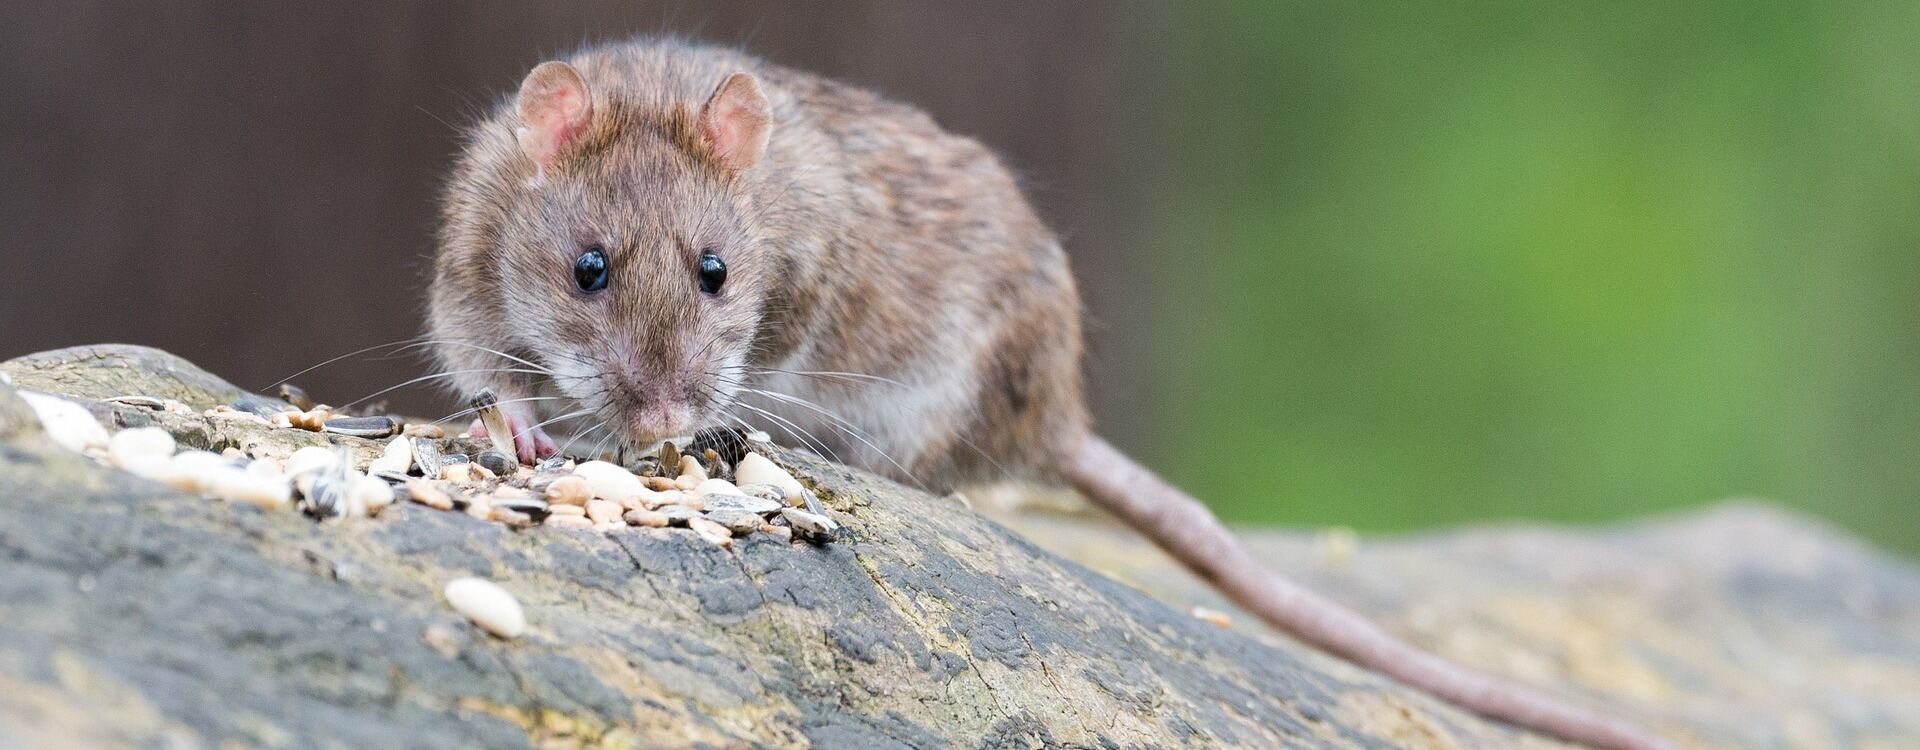 Ratte sitzend auf Stein